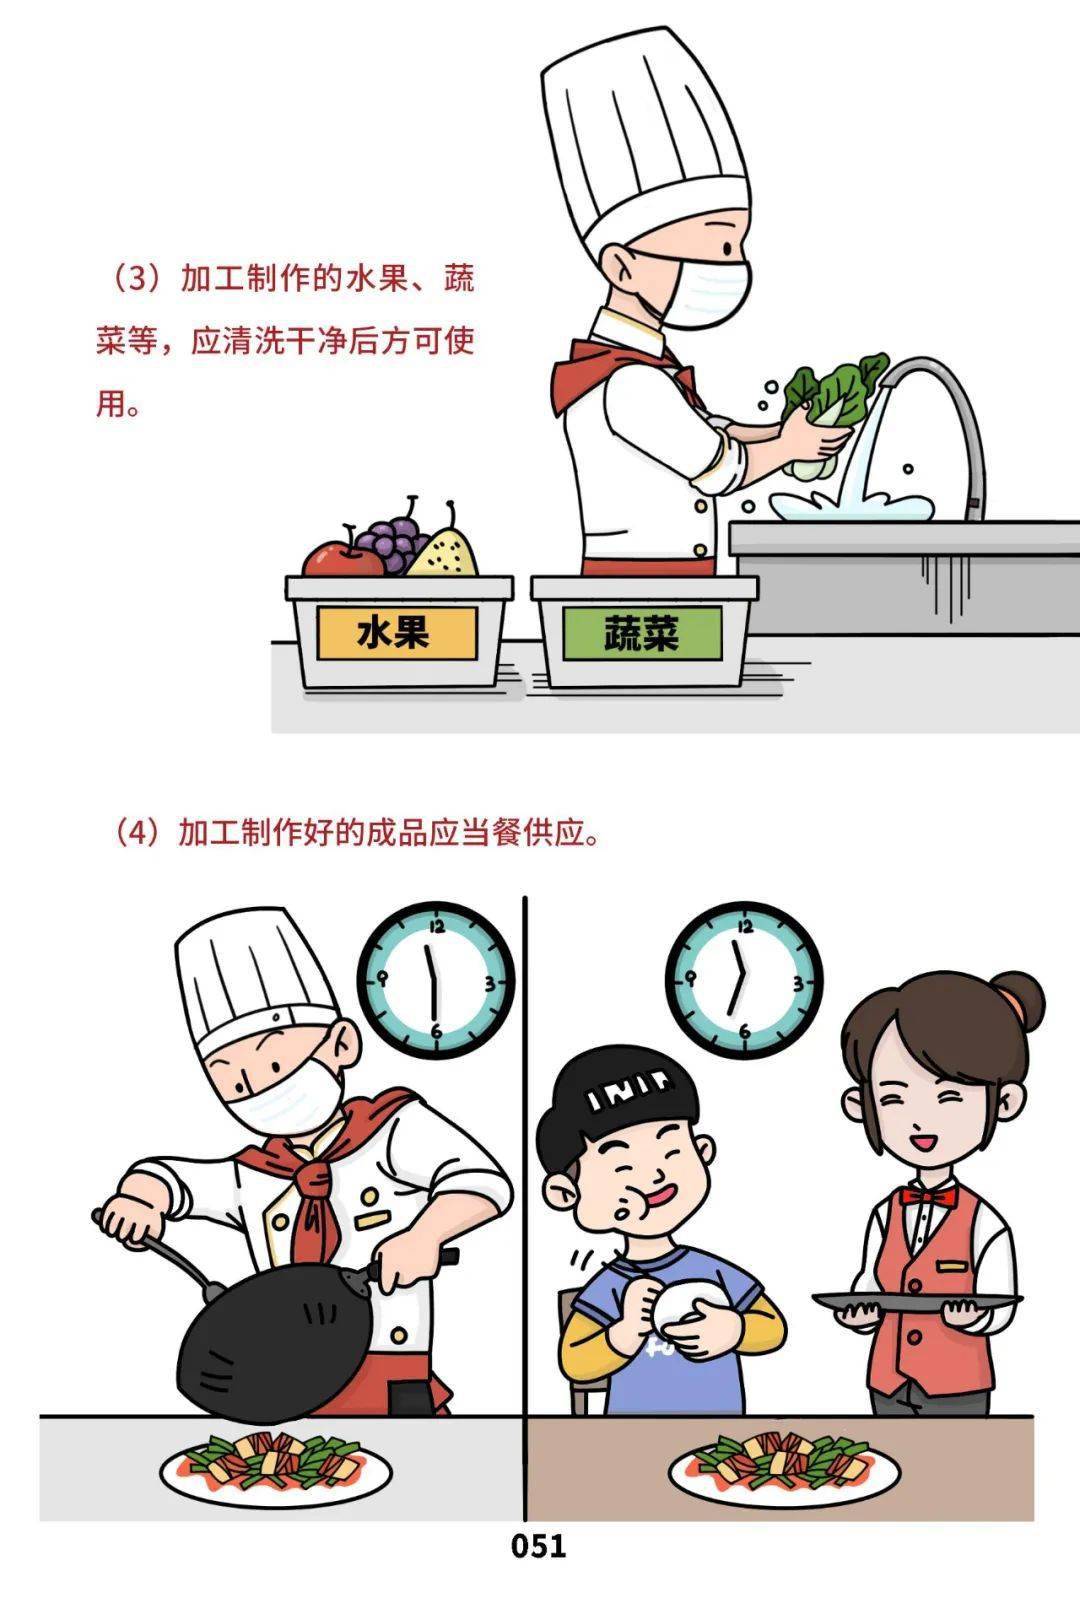 《餐饮服务食品安全操作规范宣传册》漫画版来了